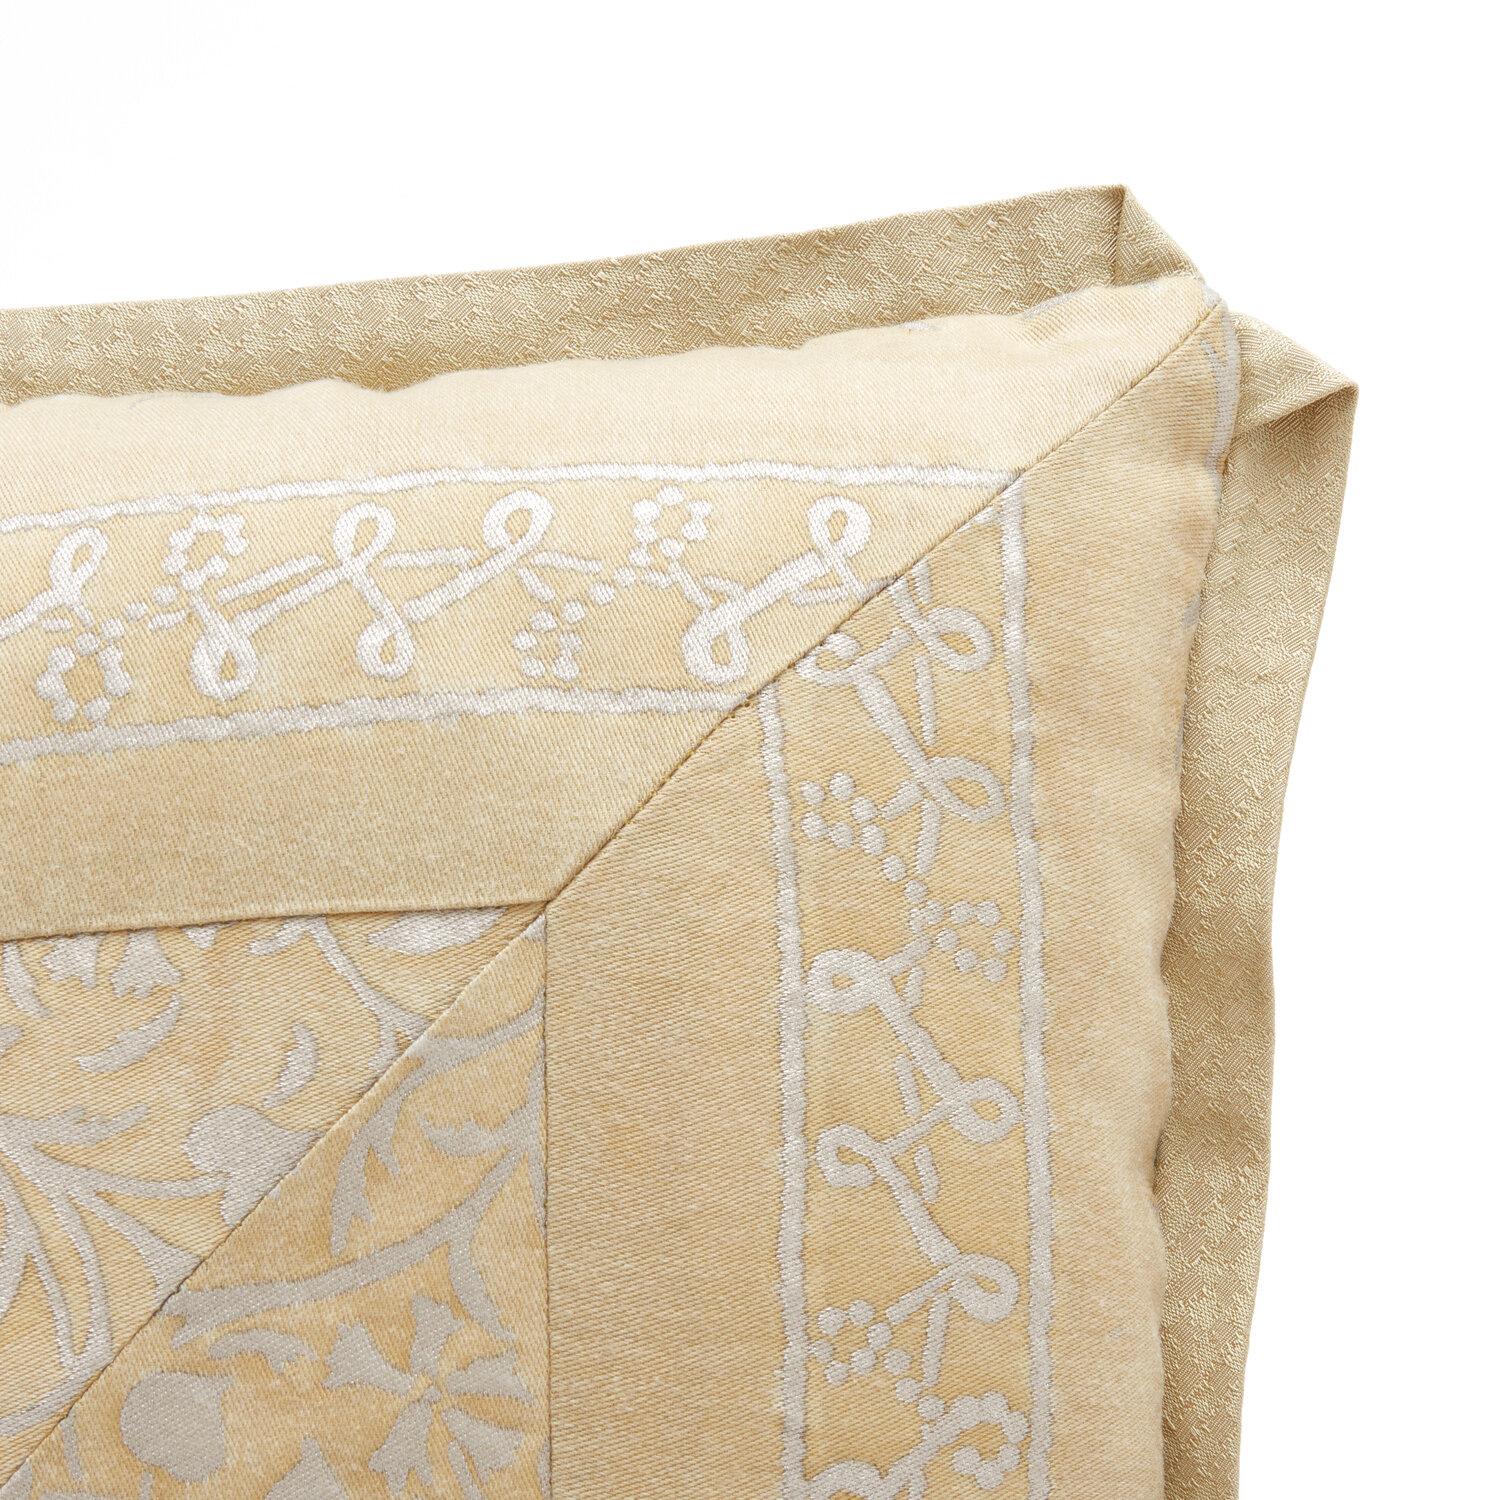 Coussin en tissu de Fortuny dans le motif Granada, avec garniture à onglet en tissu et envers en soie dorée. Nouvellement fabriqué à partir de tissu vintage Fortuny. Insert 50 duvet/50 plumes.